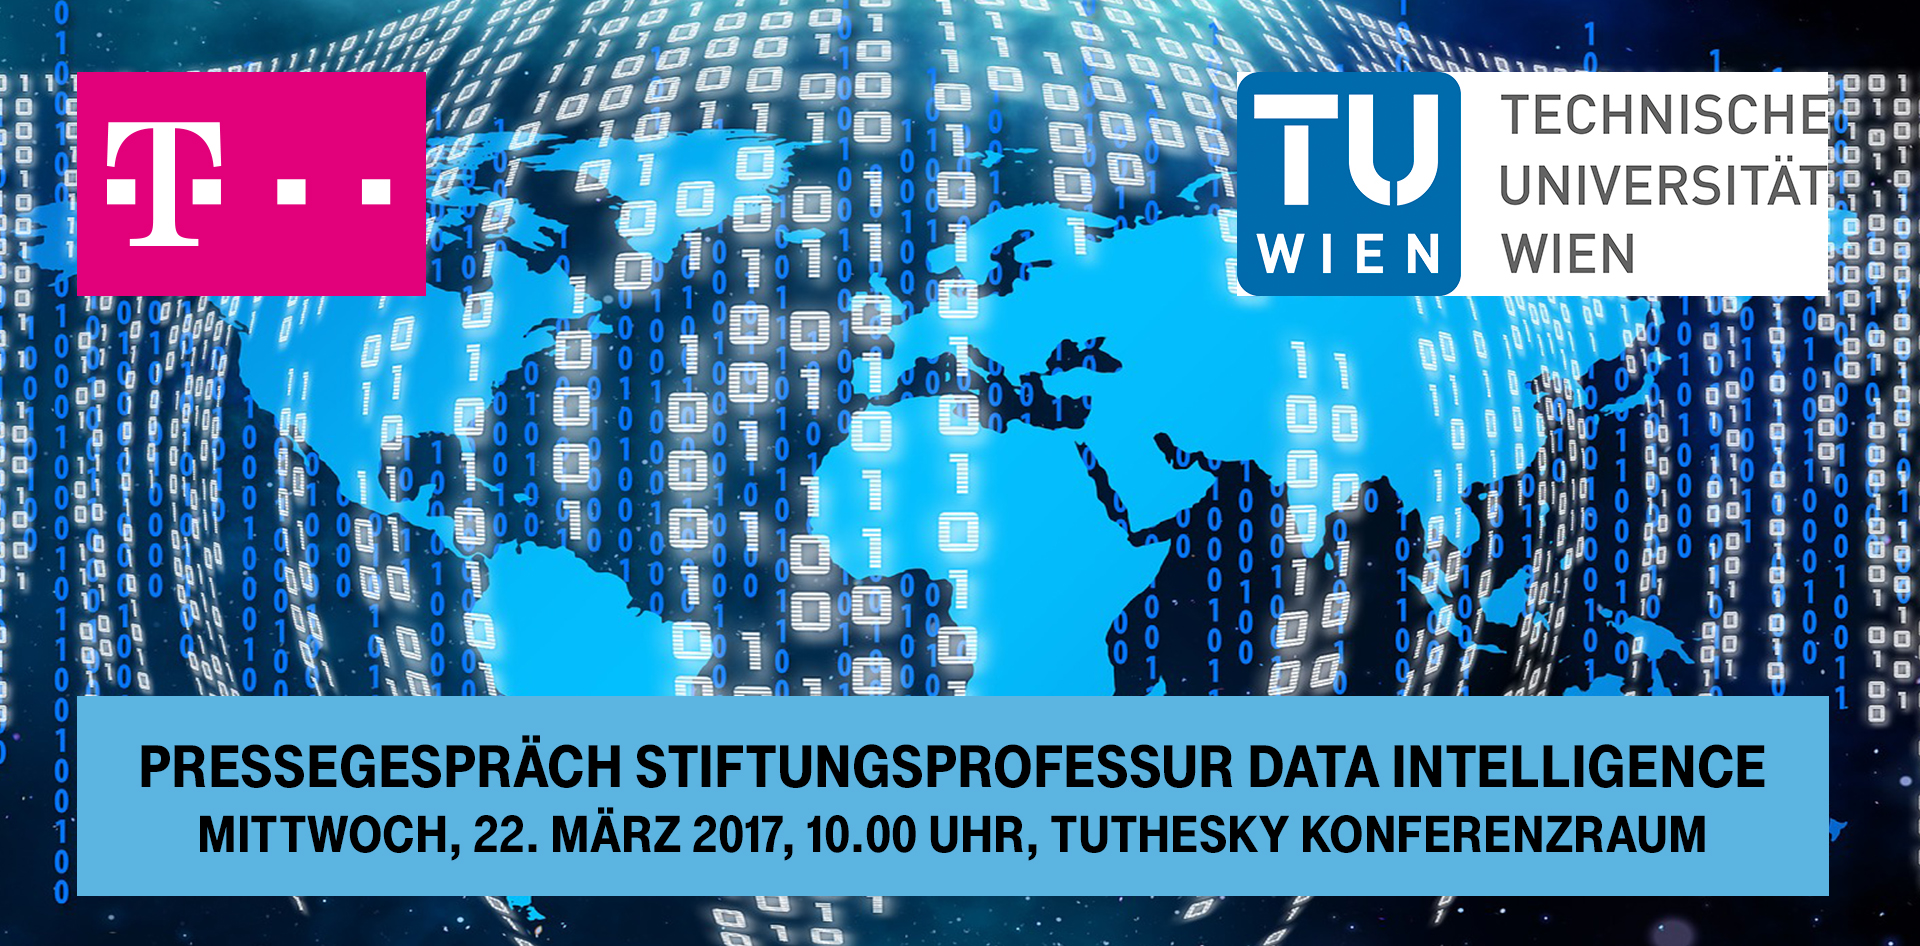 Pressegespräch: Neue Stiftungsprofessur für Data Intelligence an der TU Wien